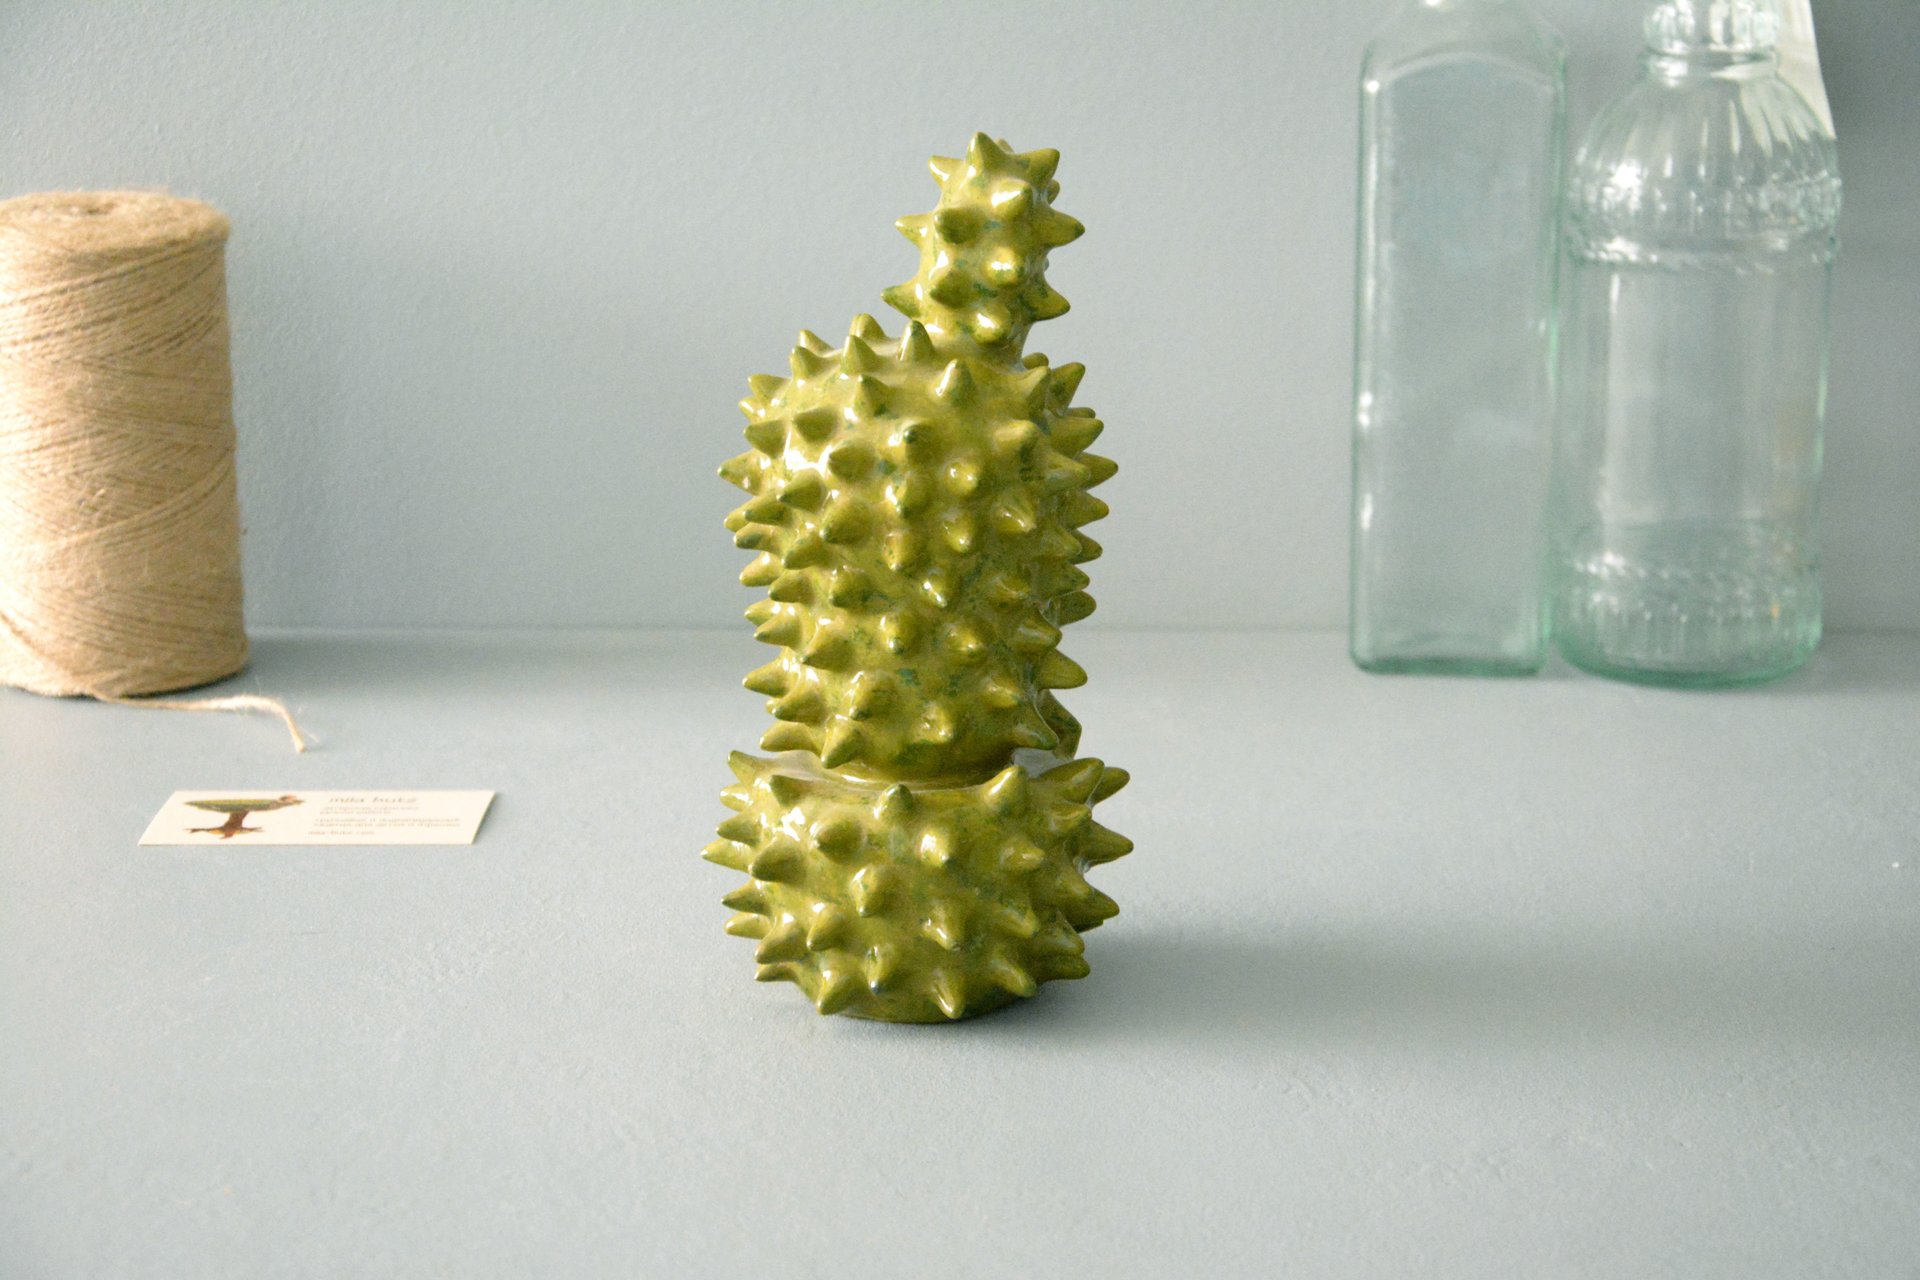 Декоративный кактус Эхинопсис - Кактусы керамические, высота - 21 см, фото 1 из 5.